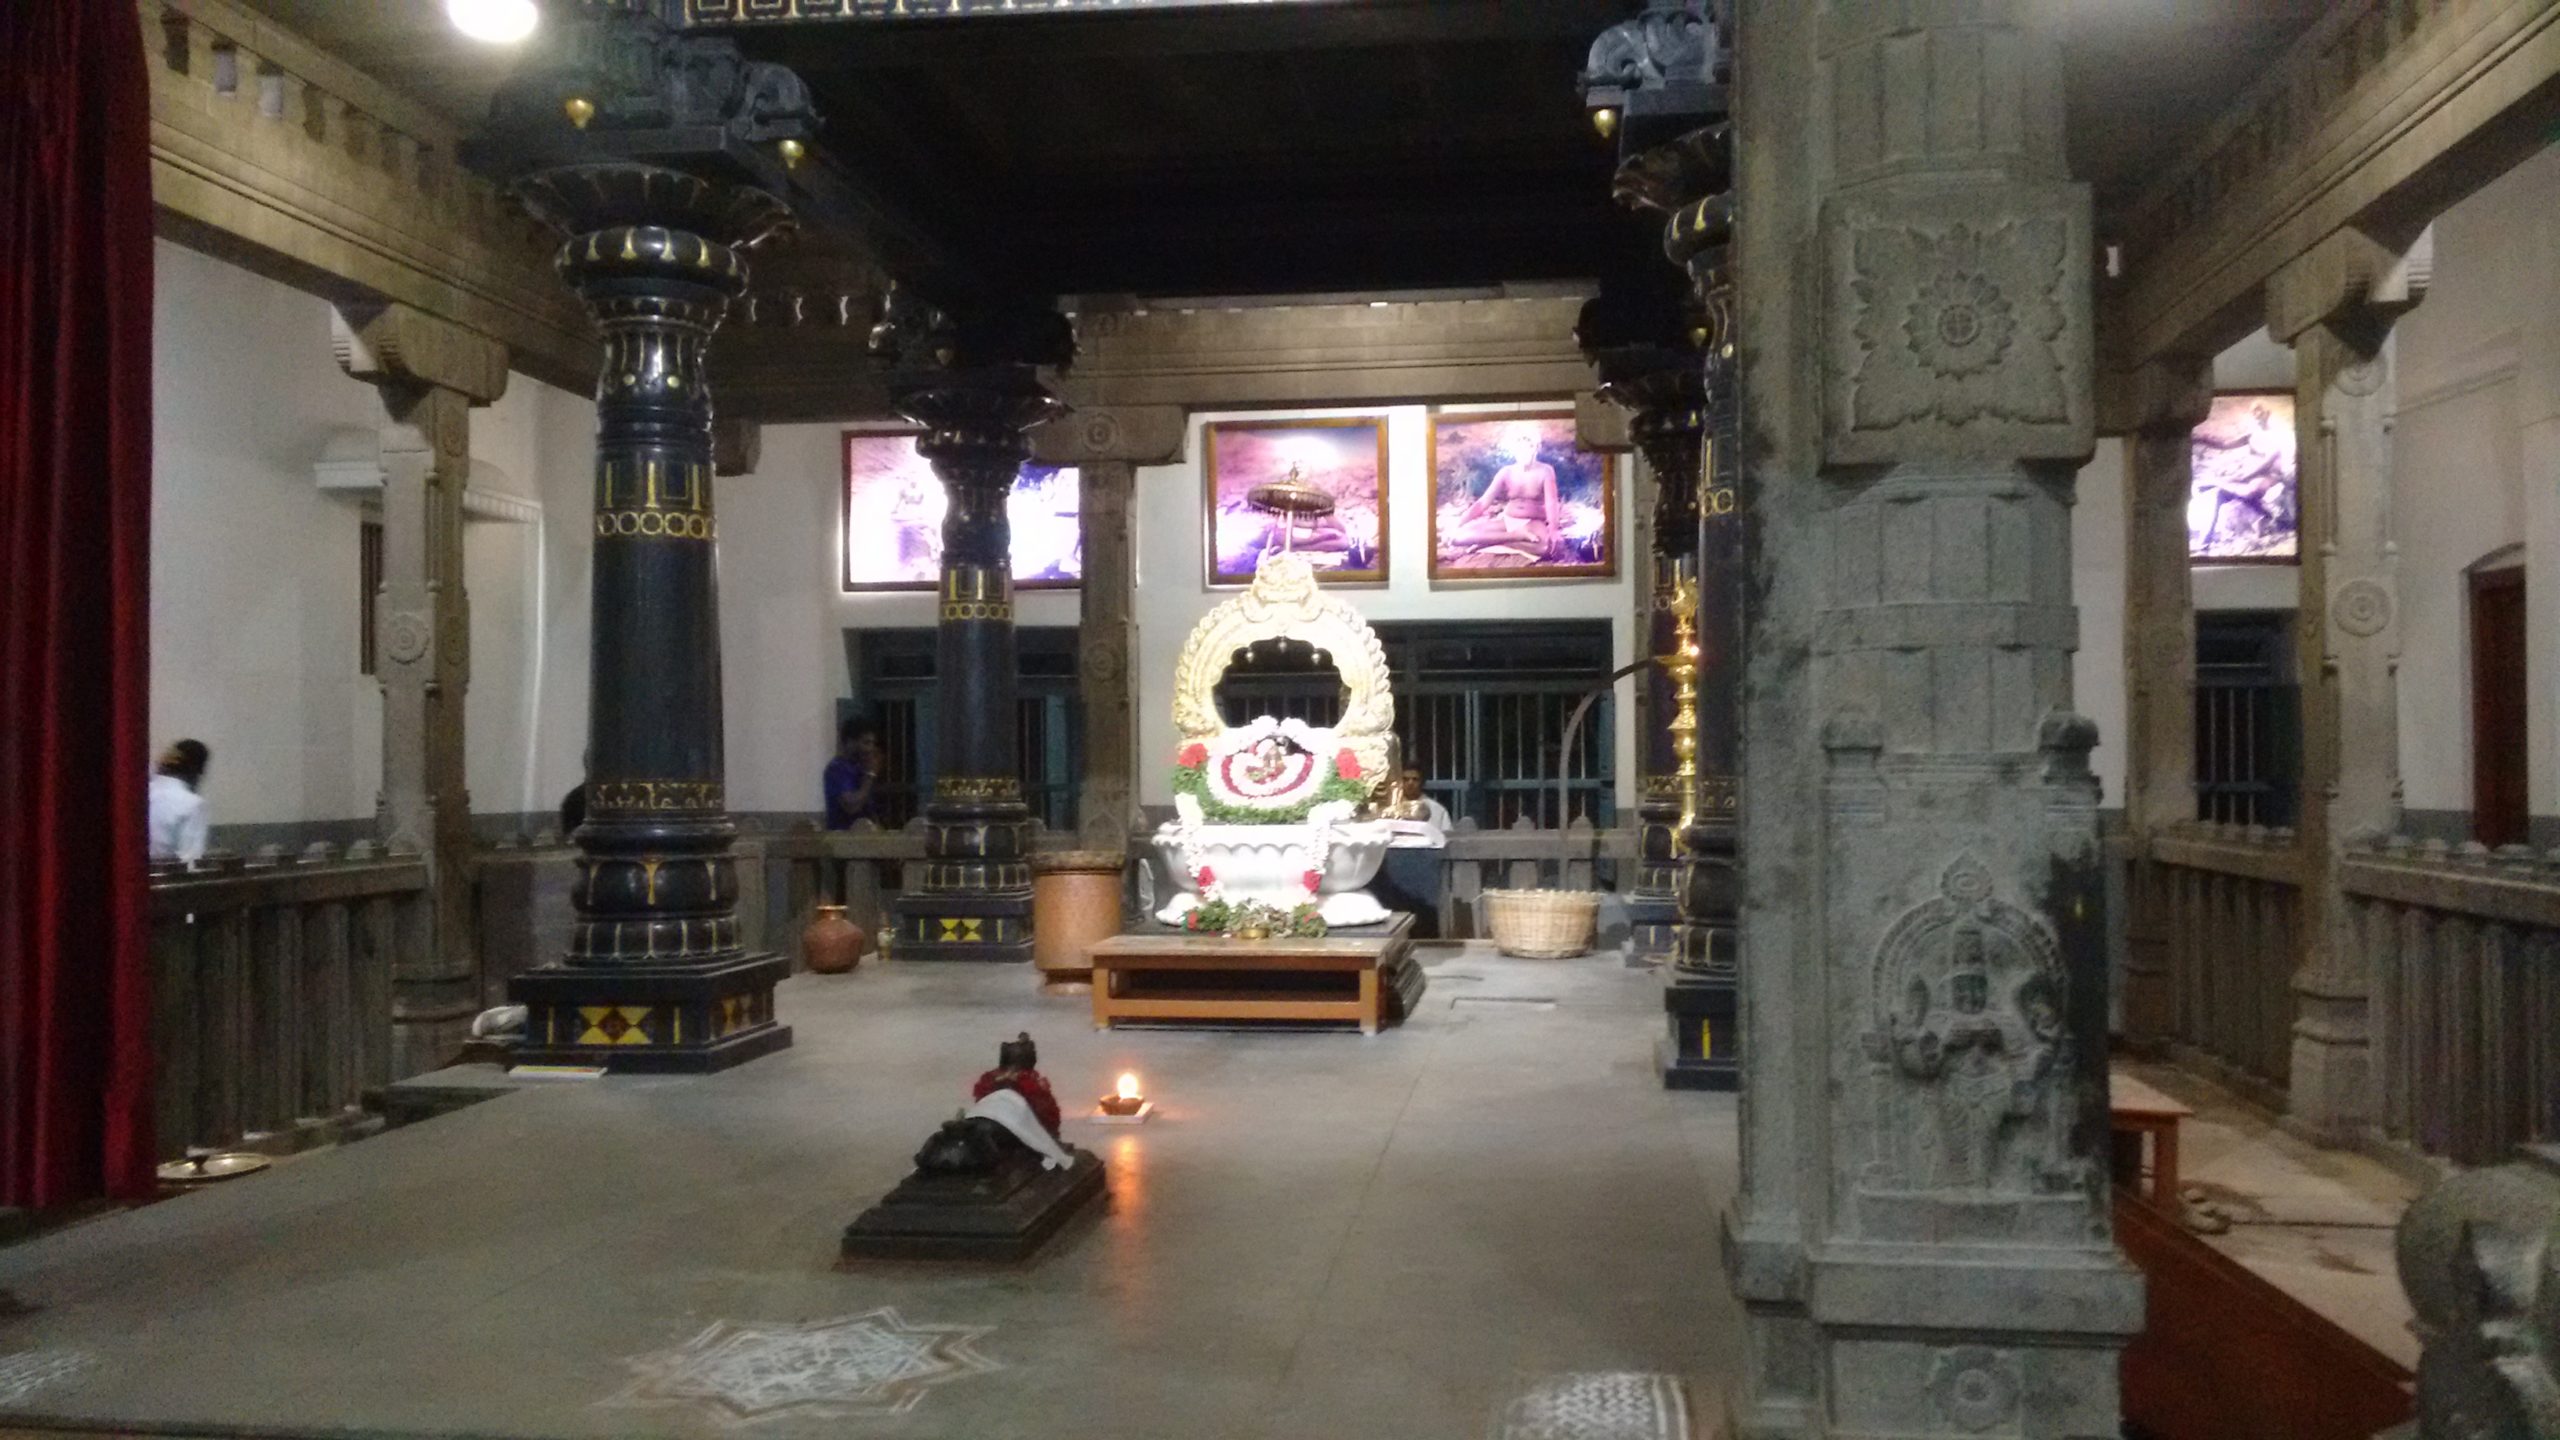 Bhagavan's Shrine